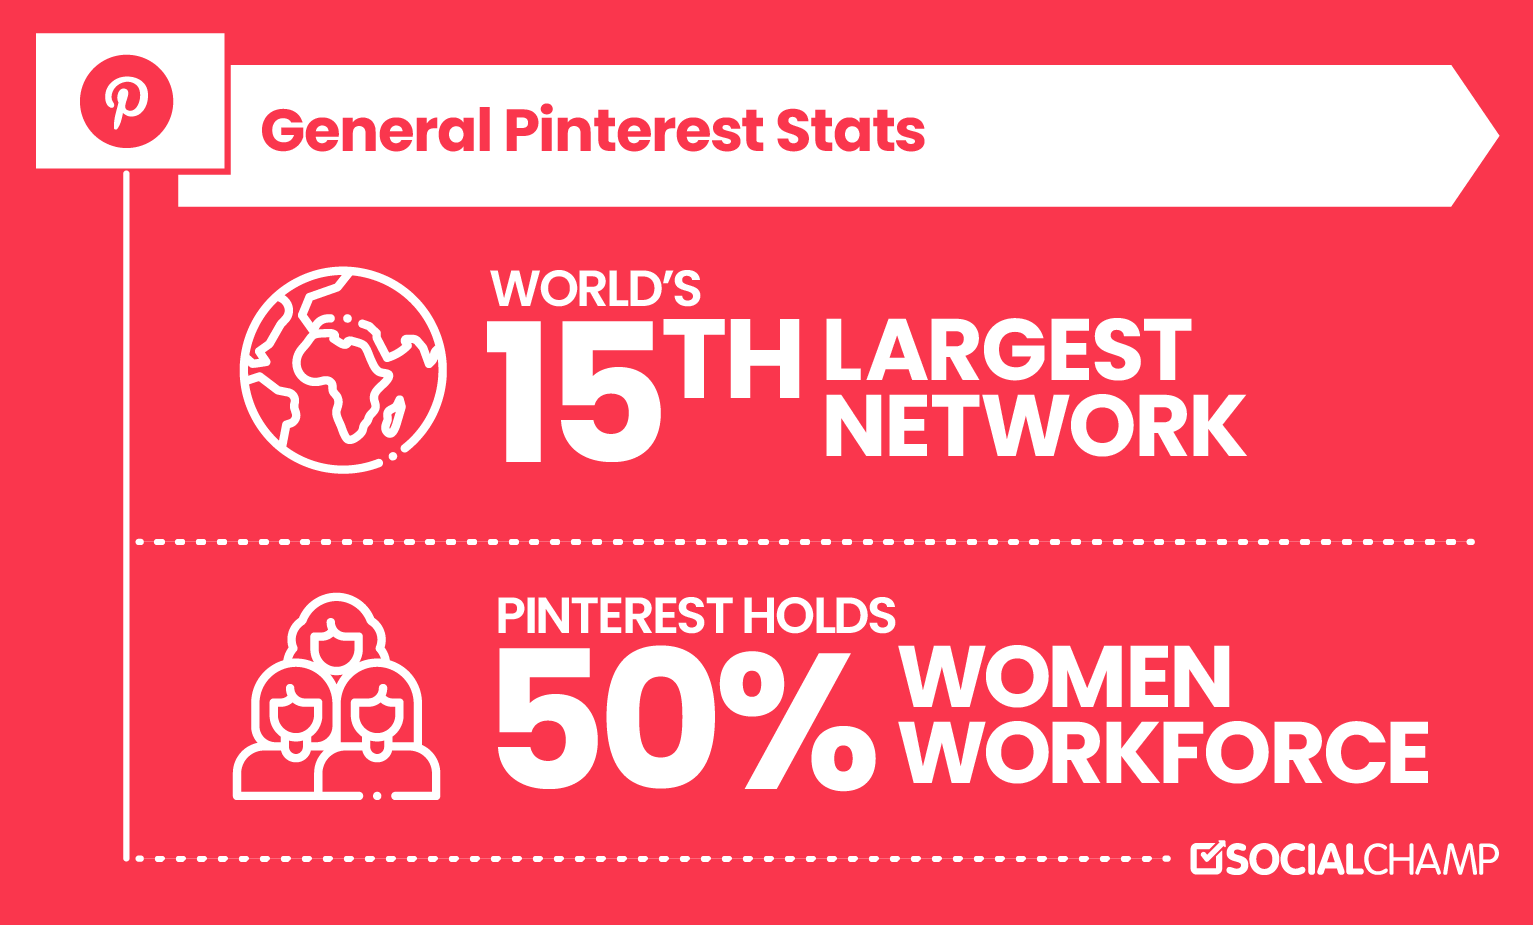 一般 Pinterest 统计数据